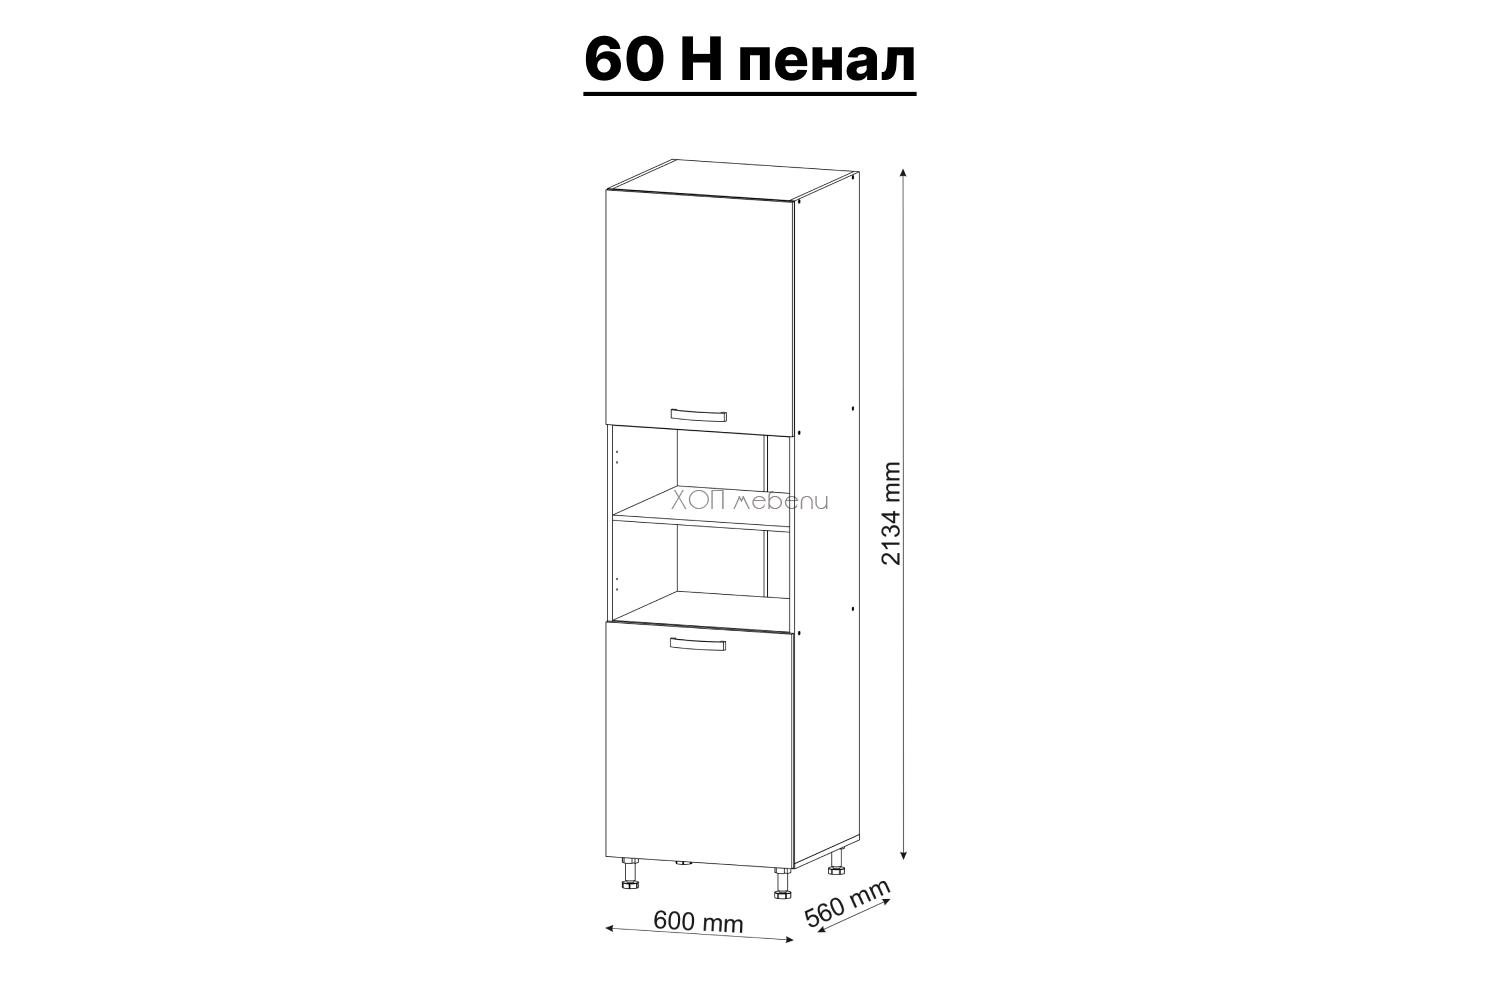 Размери на Долен кухненски шкаф колона Шарлота 60 Н пенал ID 3970